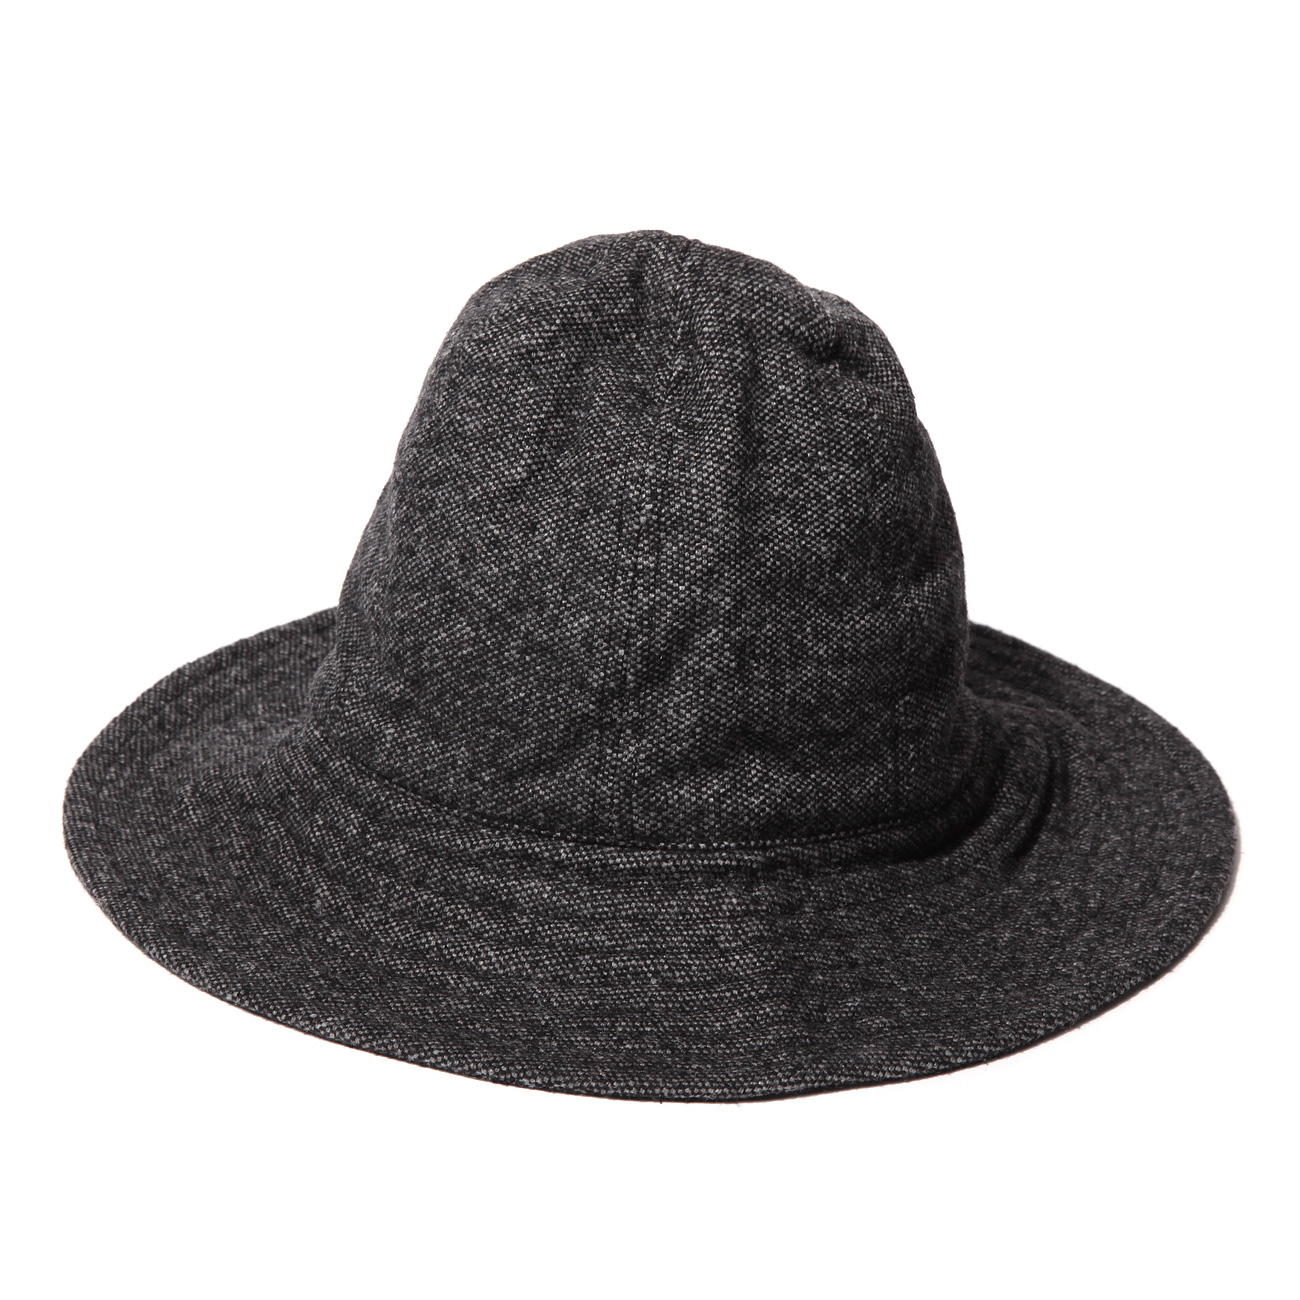 Mountain Hat - Wool Homespun - Charcoal